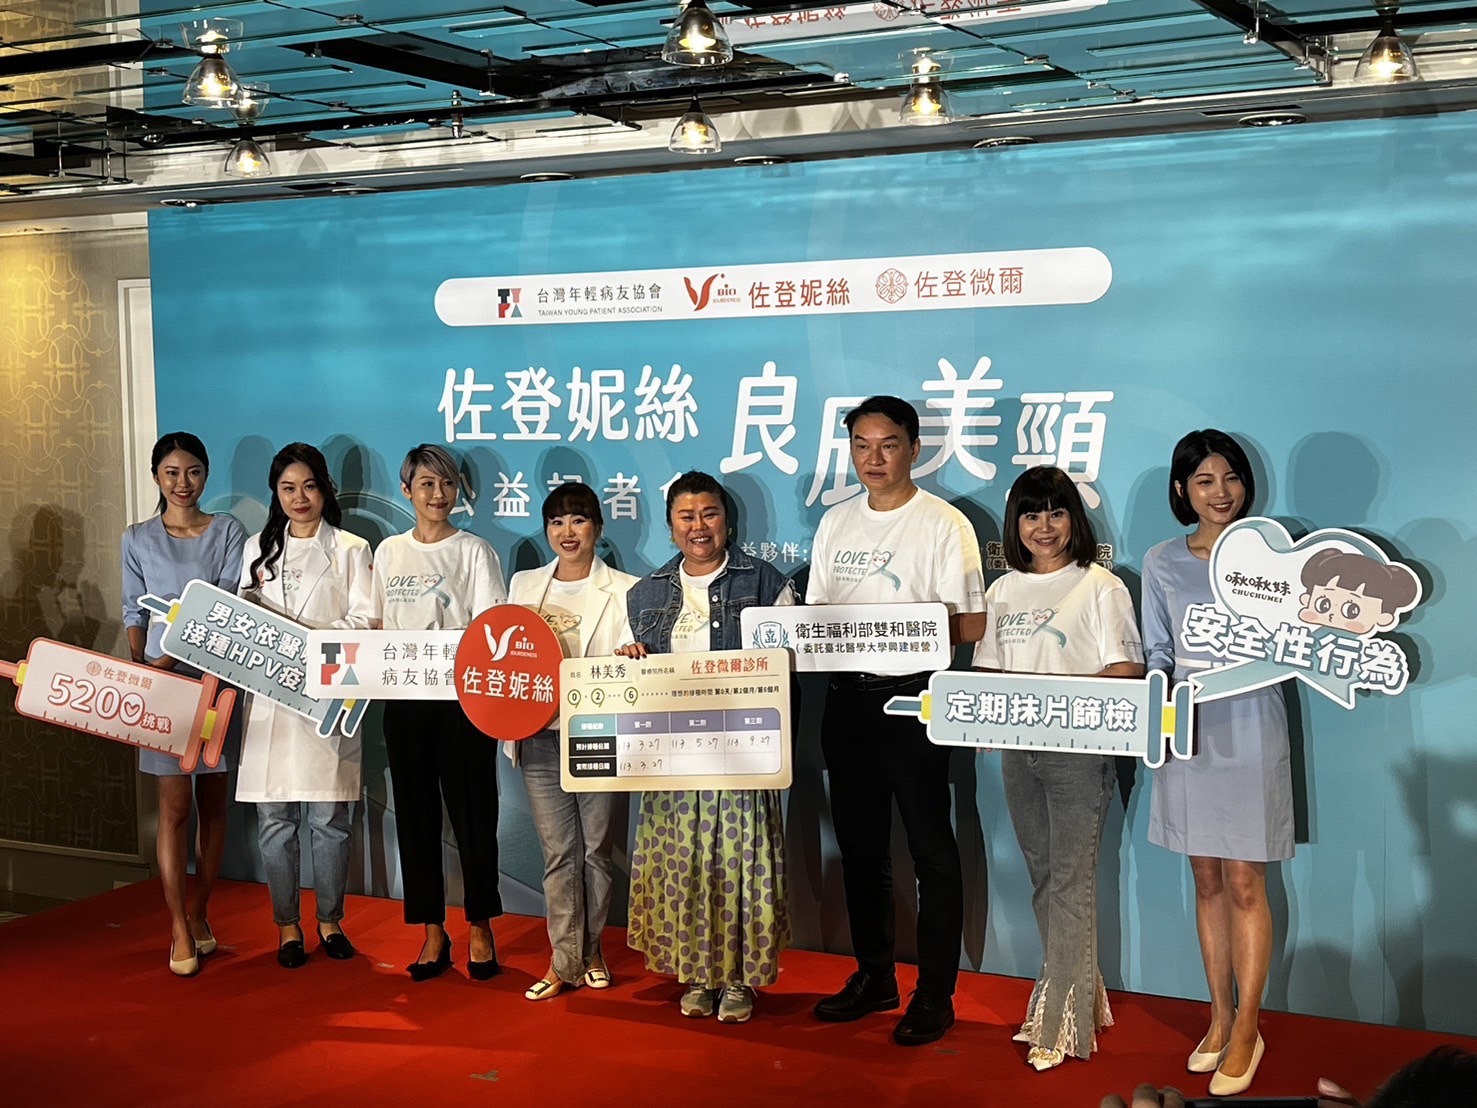 艺人林美秀（左五）、年轻病友协会理事长潘怡伶（左3）等人出席HPV卫教记者会，呼吁民众尽早接种HPV疫苗。记者林琮恩／摄影